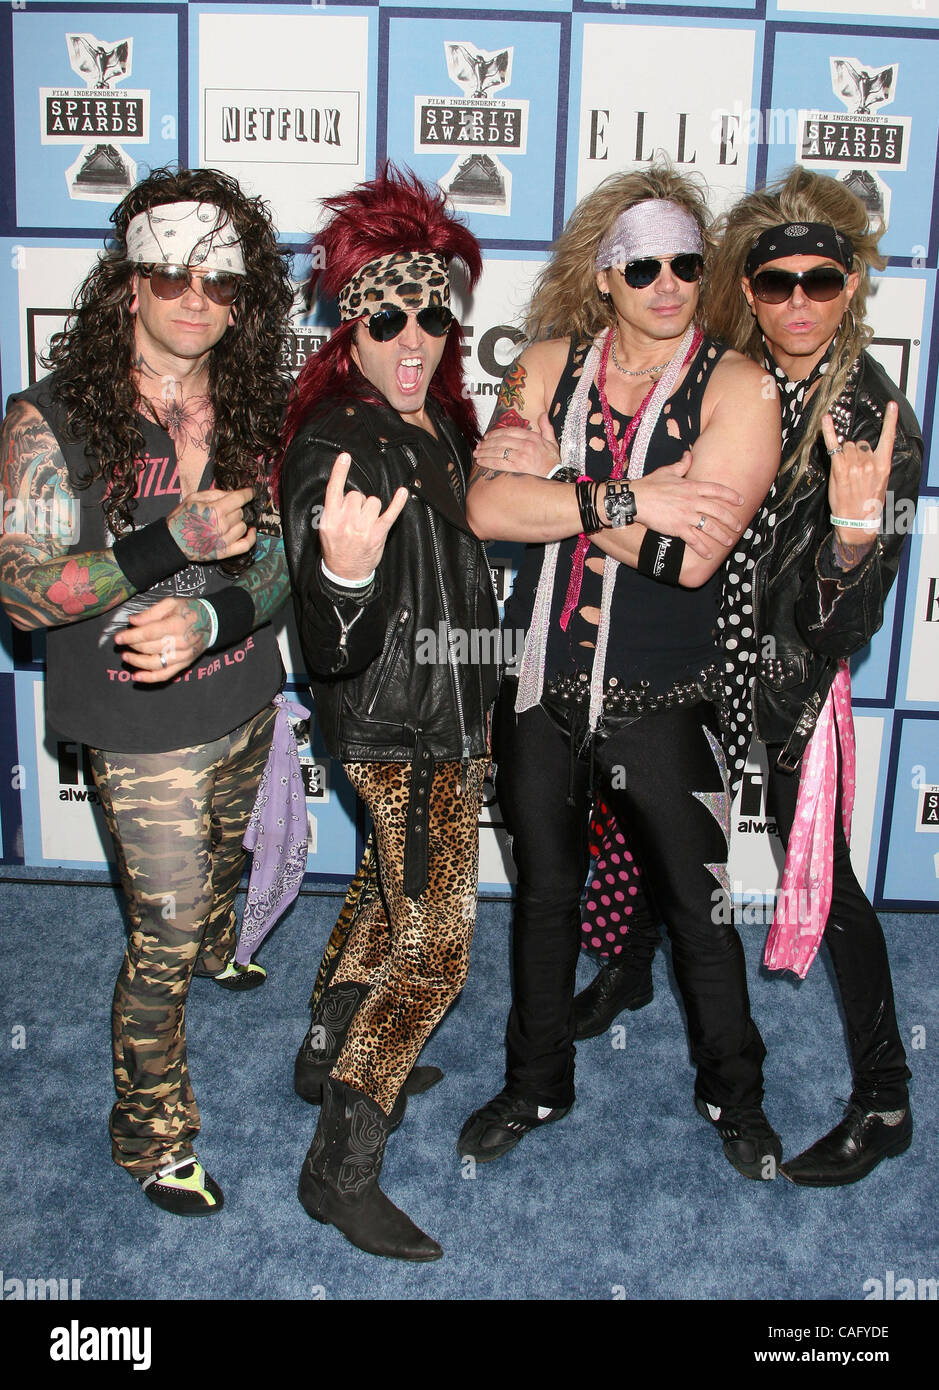 23 févr. 2008 - Santa Monica, Californie, USA - Glam rock band parodie  METAL SKOOL arrivant à l'Independent Spirit Awards 2008 qui a eu lieu dans  une tente sur la plage de